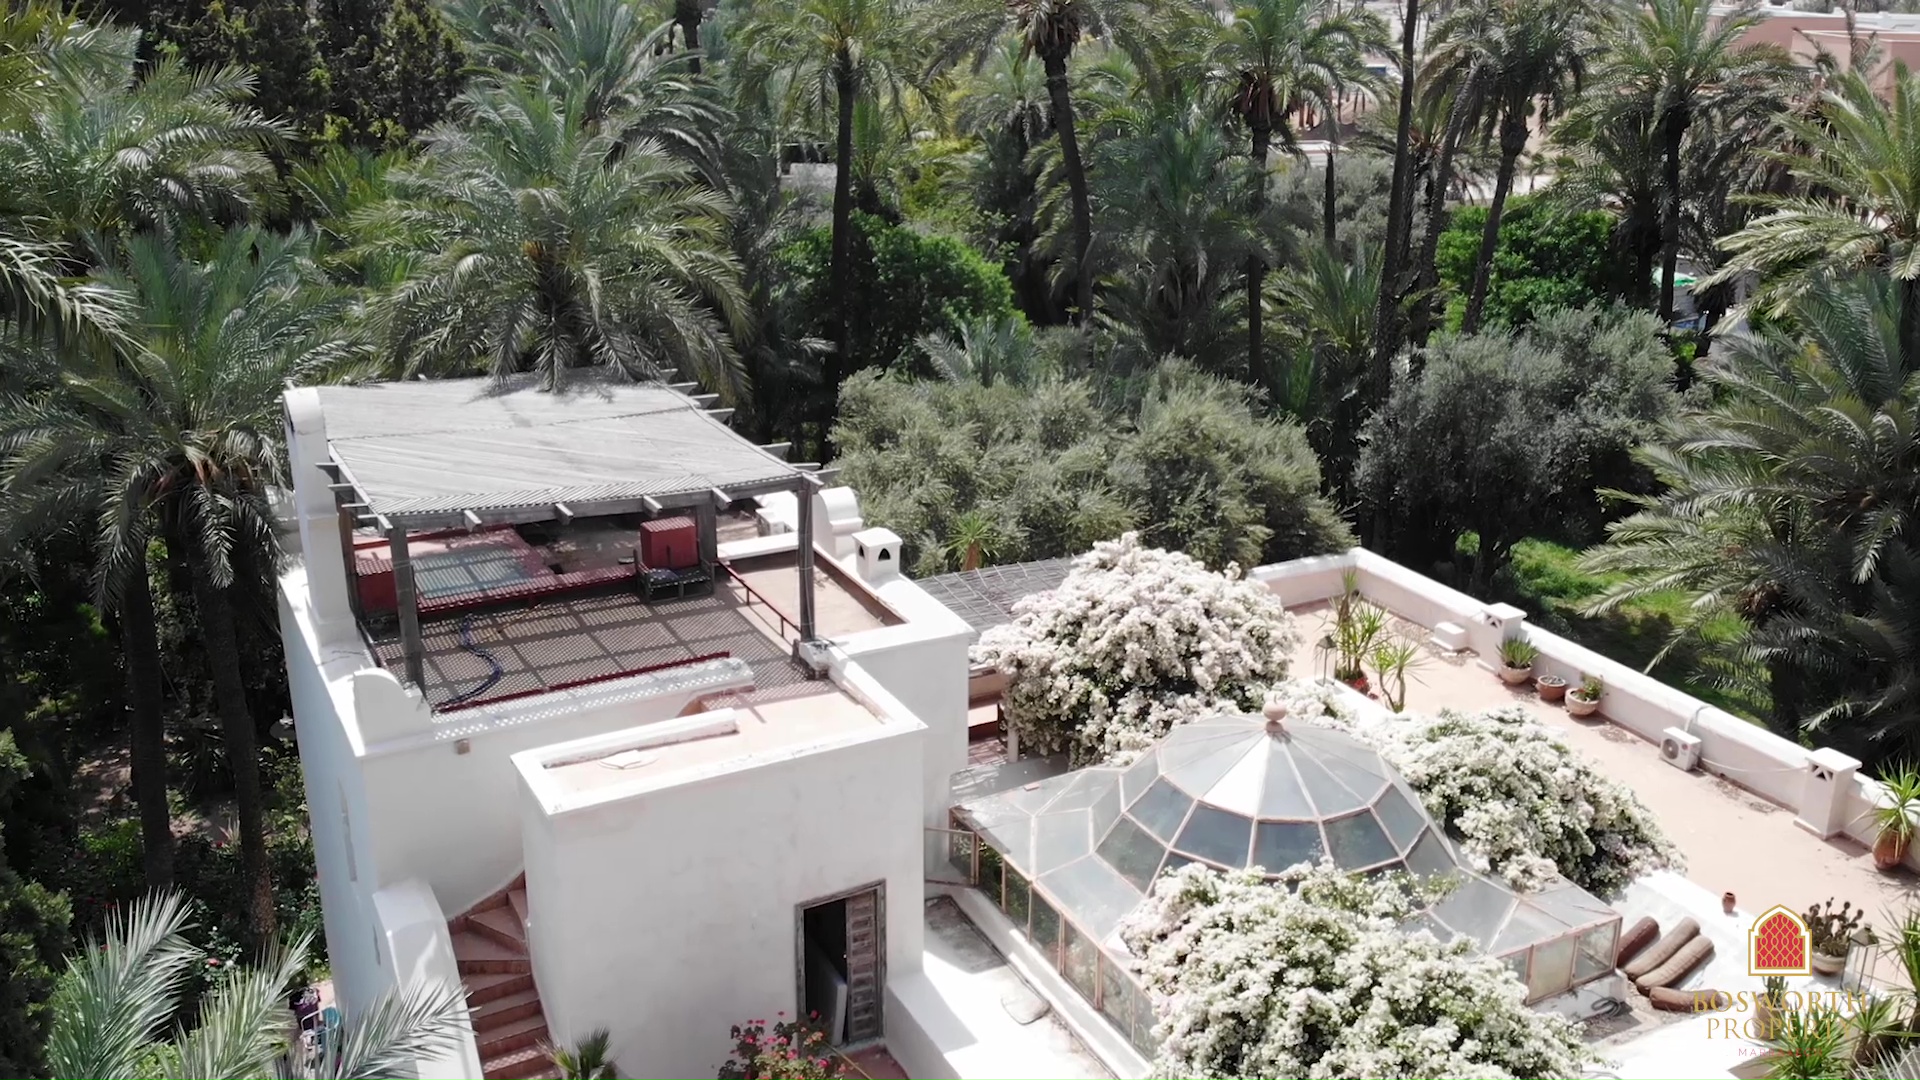 Historische Luxusvilla zum Verkauf Marrakesch Palmeraie - Luxusimmobilie in Marrakesch - Villa zum Verkauf in Marrakesch - Immobilien in Marrakesch - Immobilien in Marrakesch - immobilier marrakech - Villa a vendre marrakech